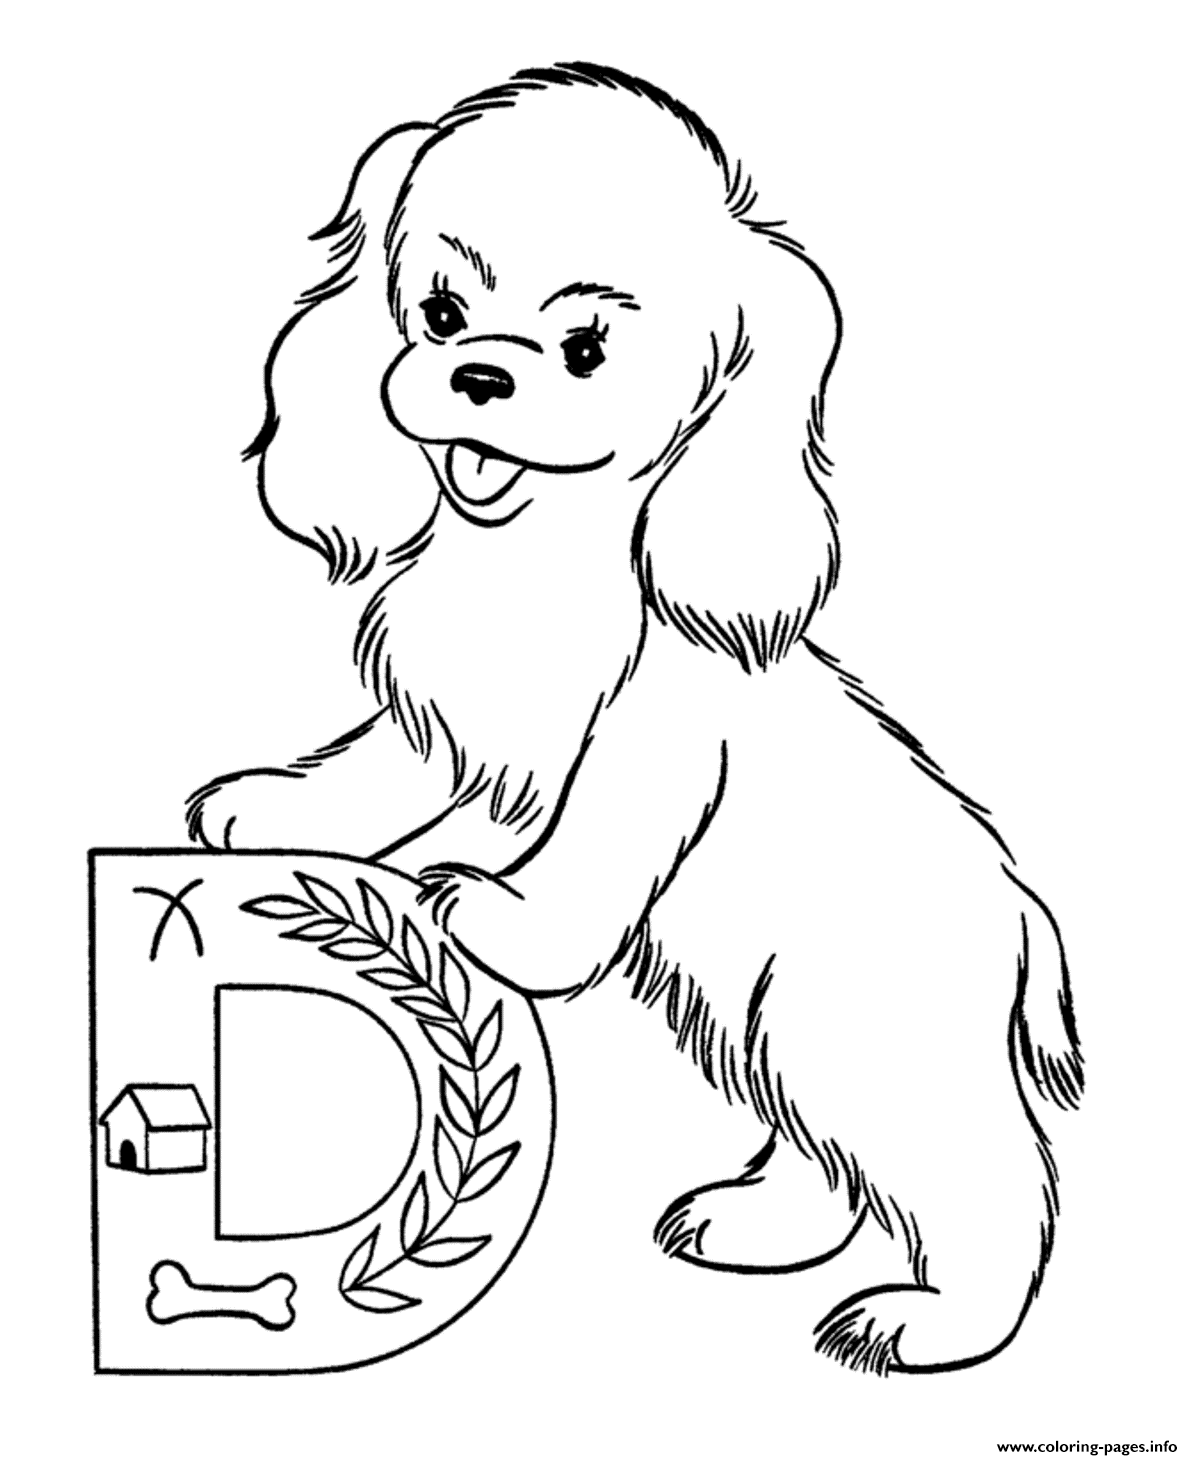 Cute Dog Printable Alphabet S1a0a2 coloring